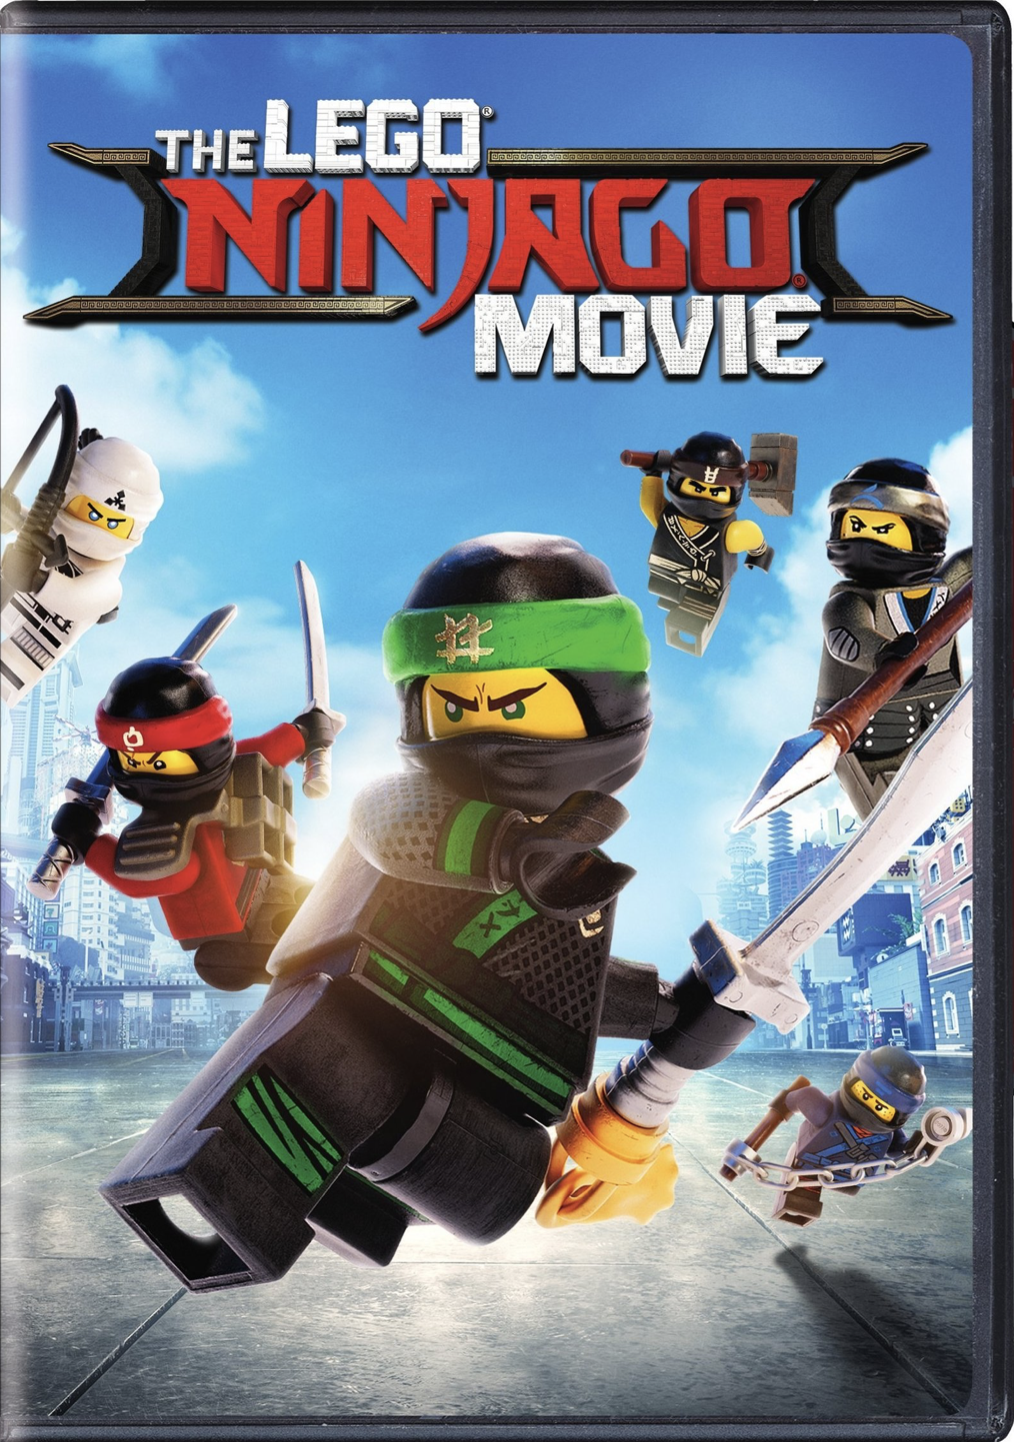 The Lego Ninjago Movie/Home media, Moviepedia